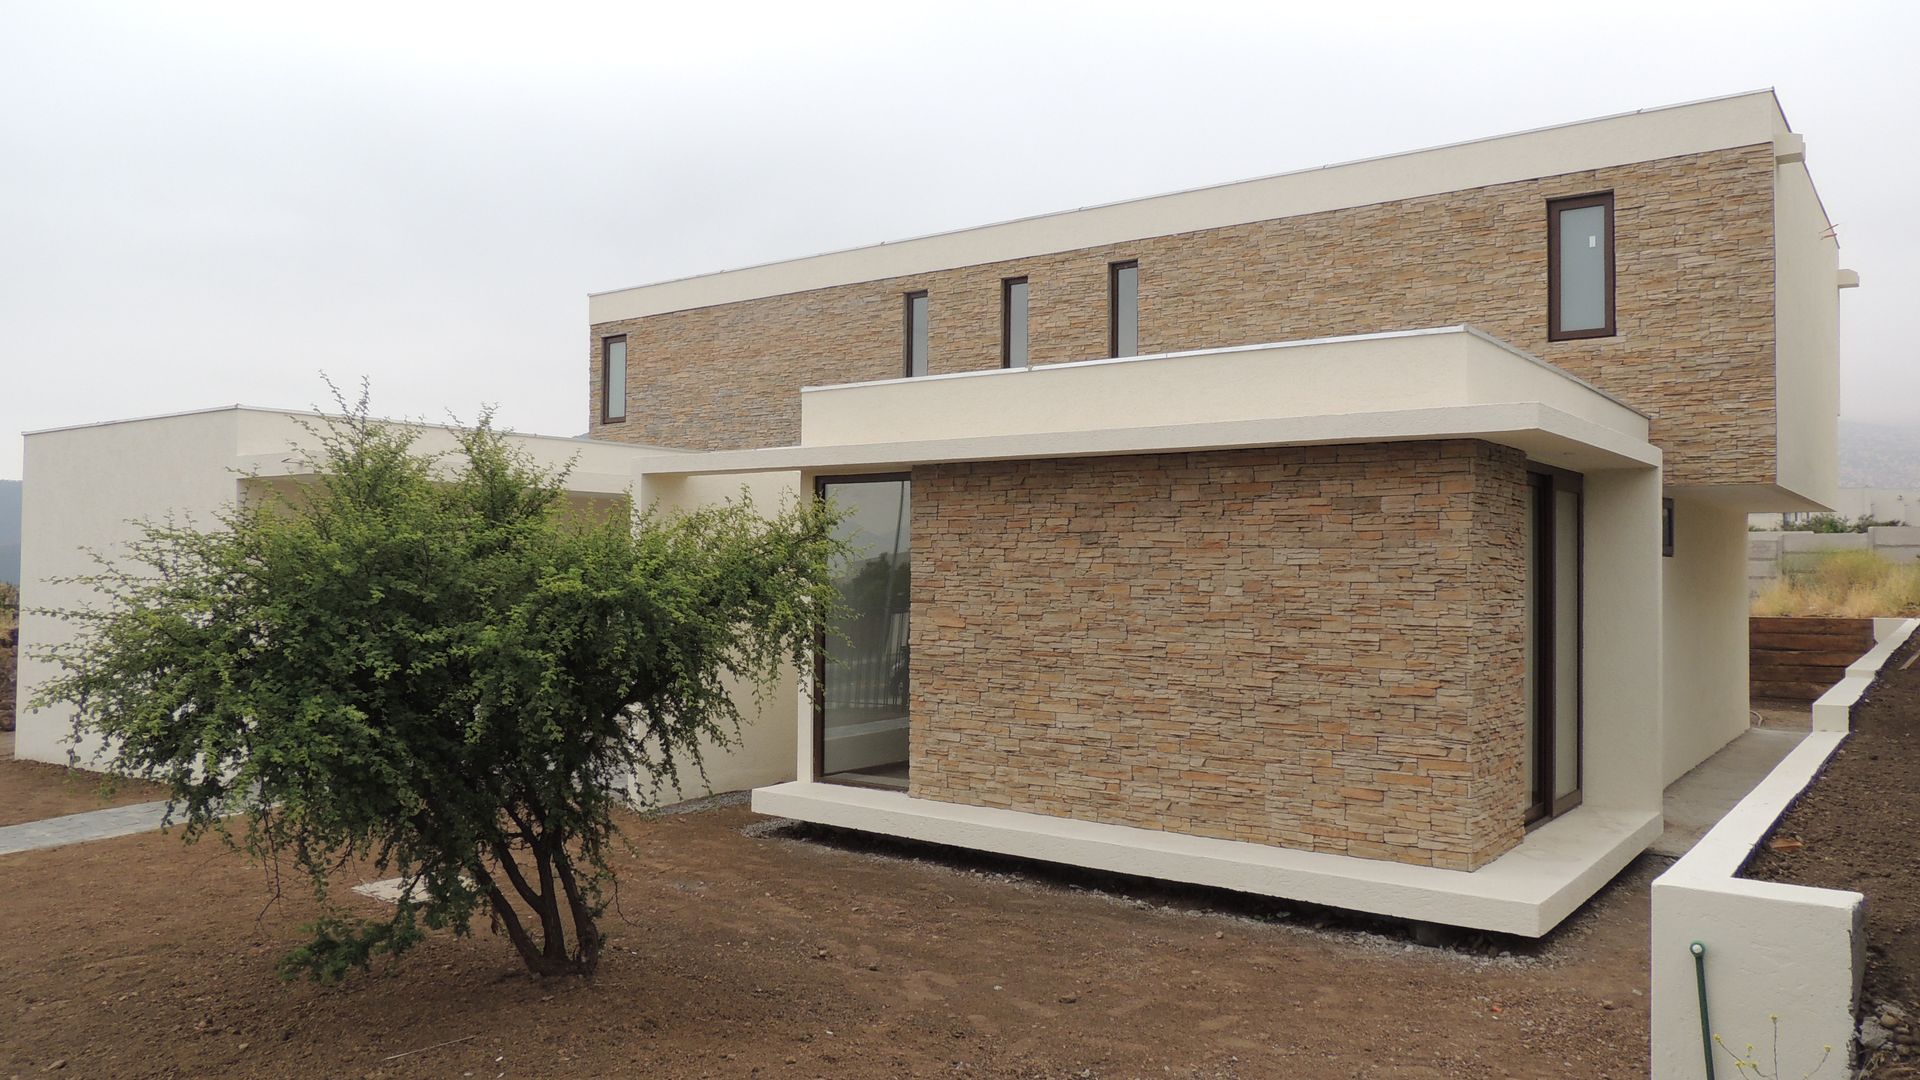 Casa Los Rios - Piedra Roja, proyecto arquitek proyecto arquitek Single family home Chipboard